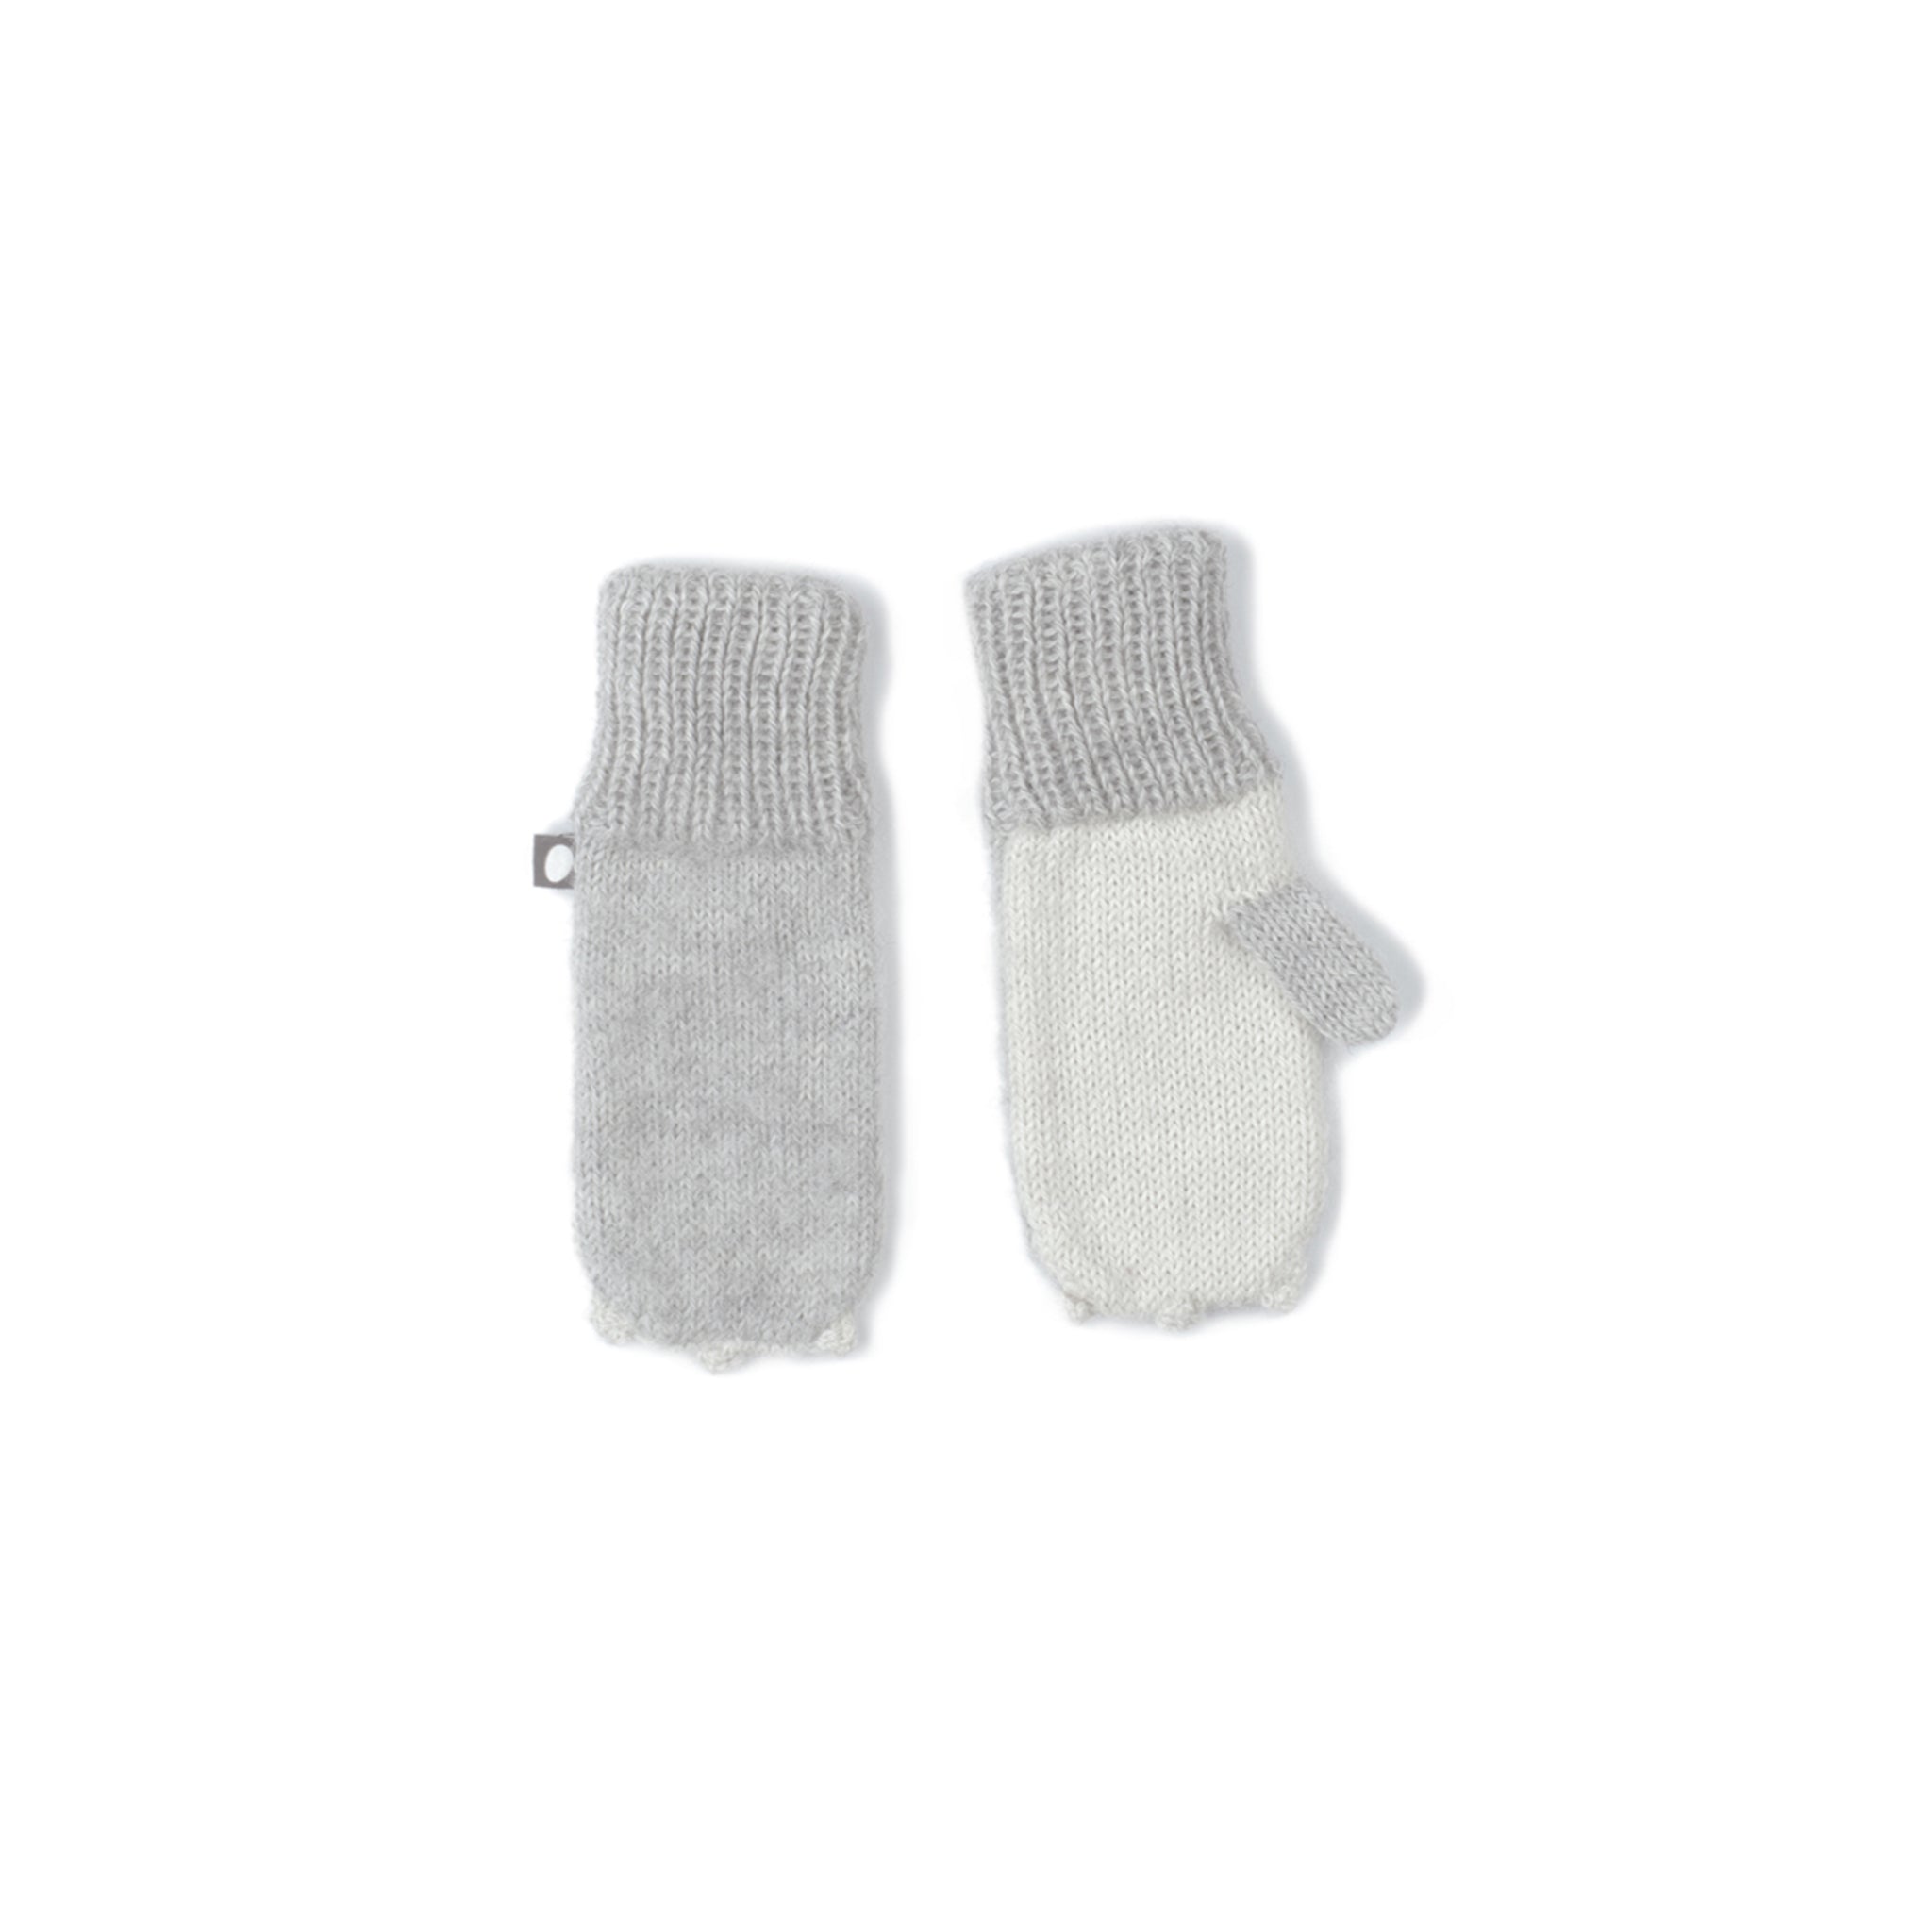 Bunny mittens, grey - Cemarose Children's Fashion Boutique